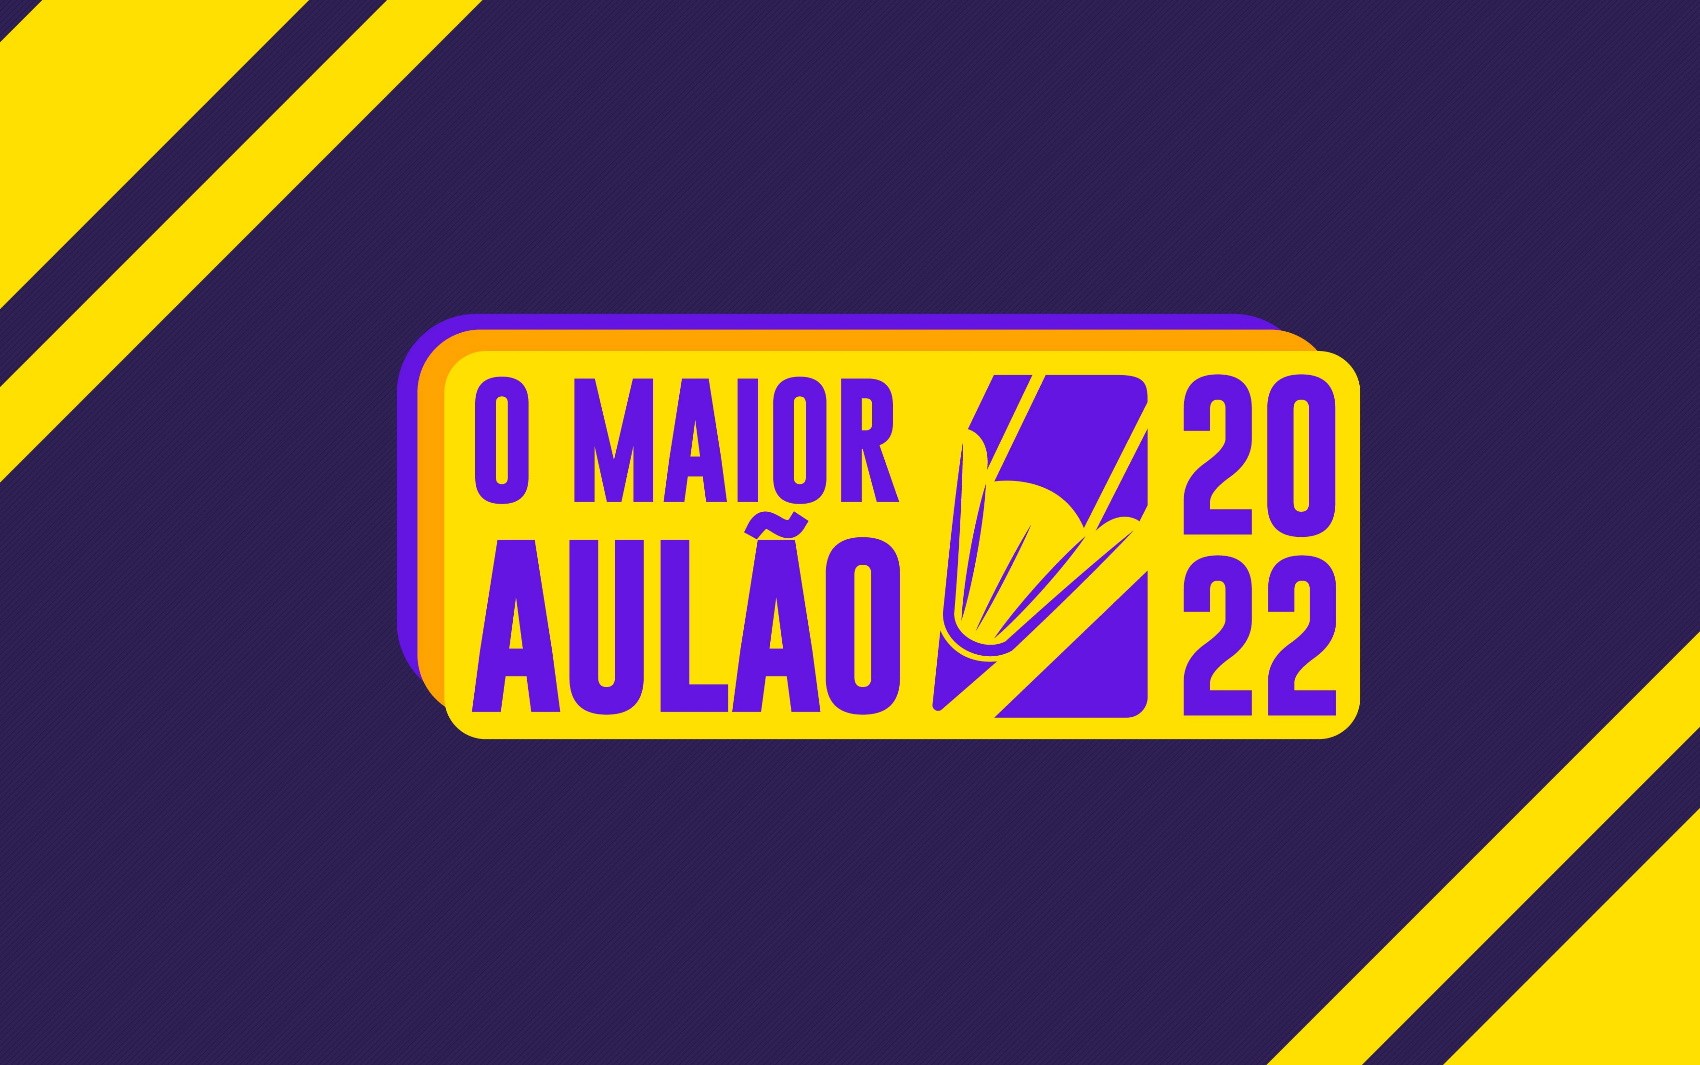 Enem 2022: ‘Maior Aulão de Goiás’ tem mais de 3 mil inscritos em cinco dias; veja como participar